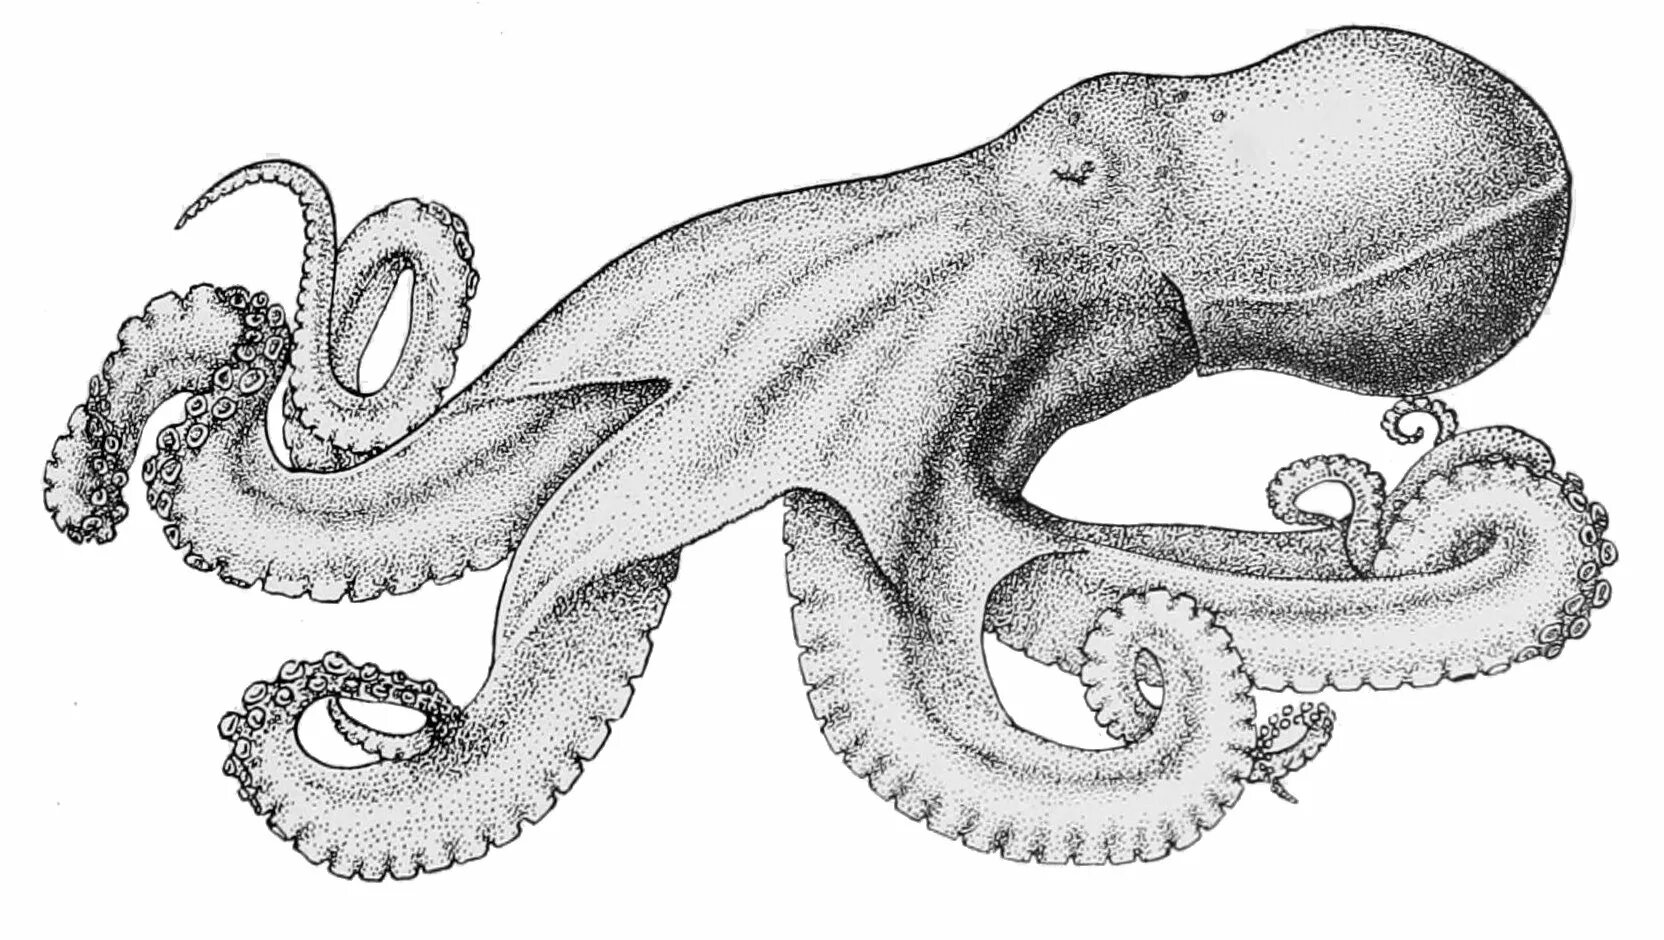 Головоногий рисунок. Головоногие моллюски моллюски. Muusoctopus leioderma. Осьминог. Головоногие рисунок.